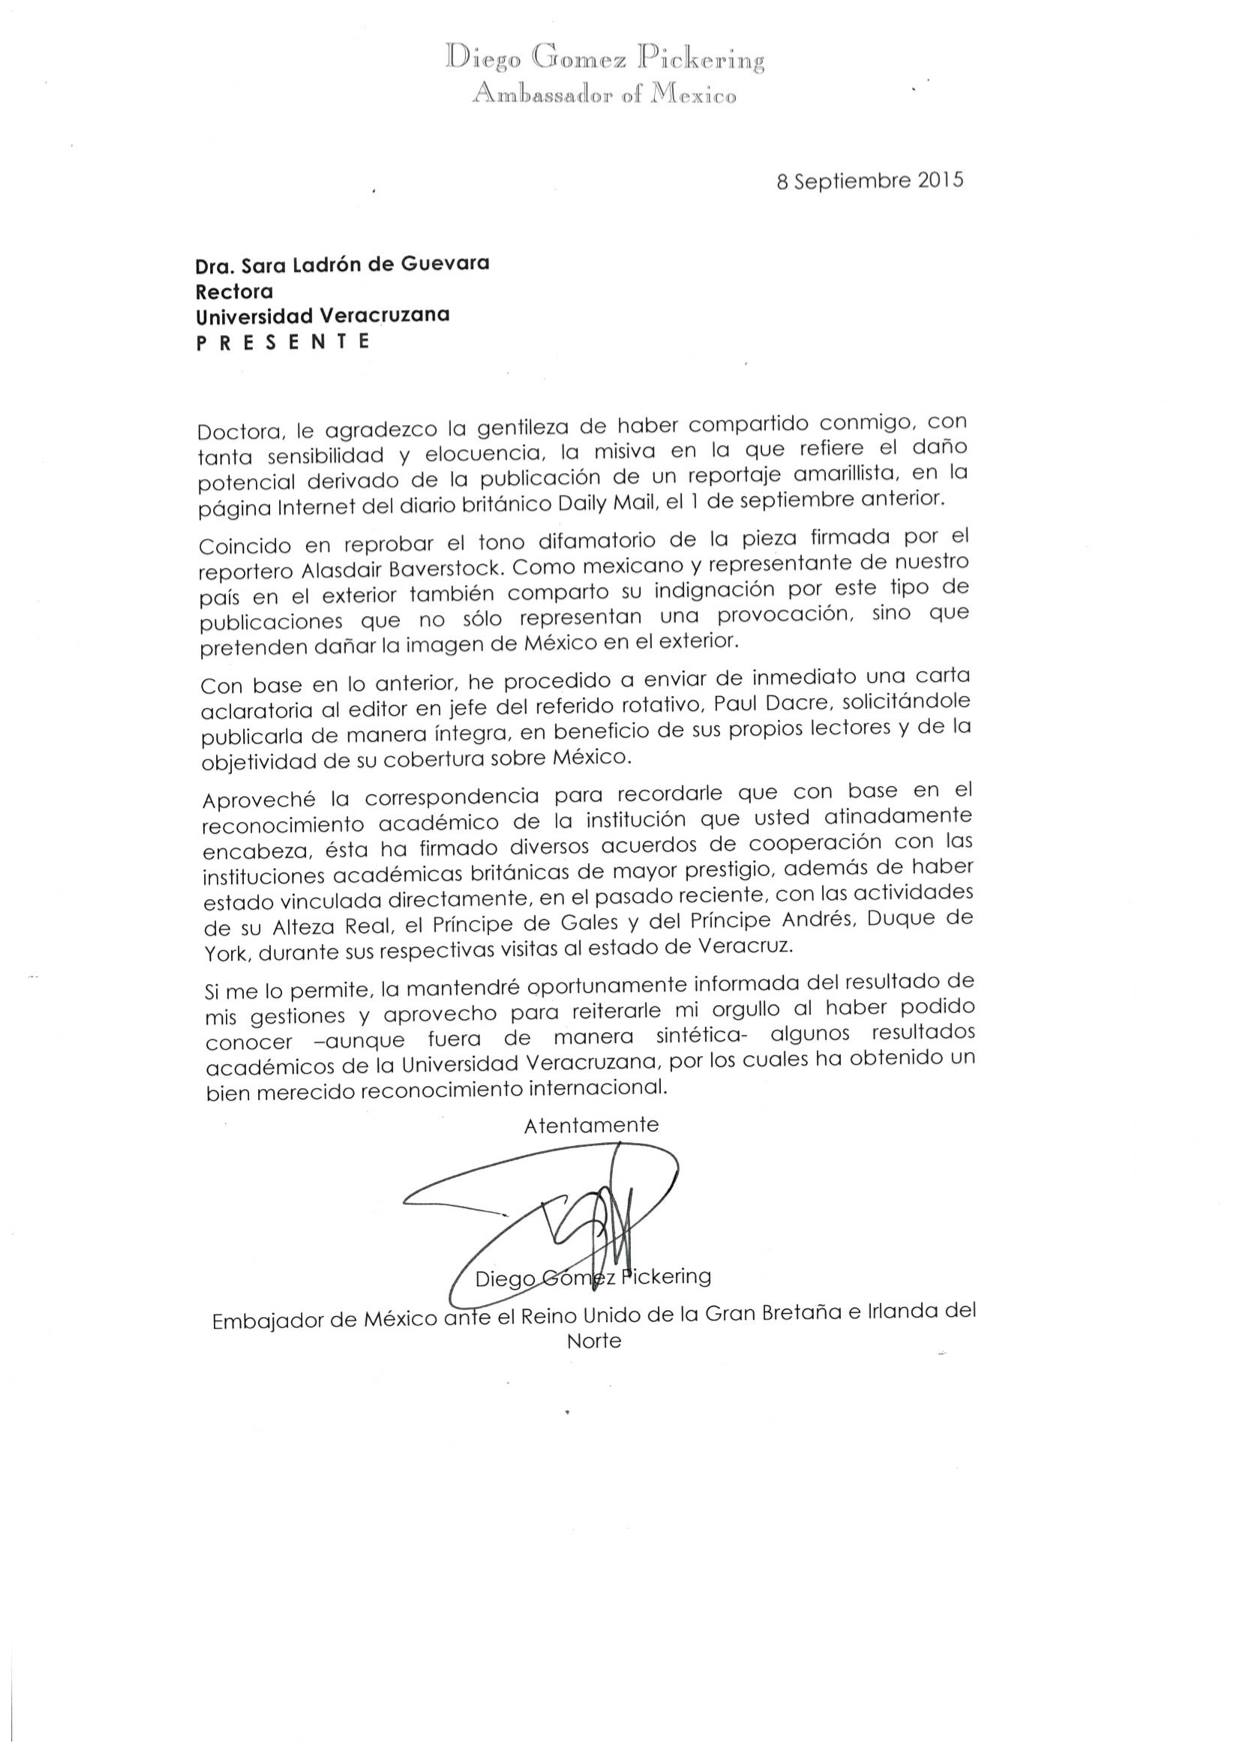 Respuesta del embajador del RU a Sara Ladrón de Guevara